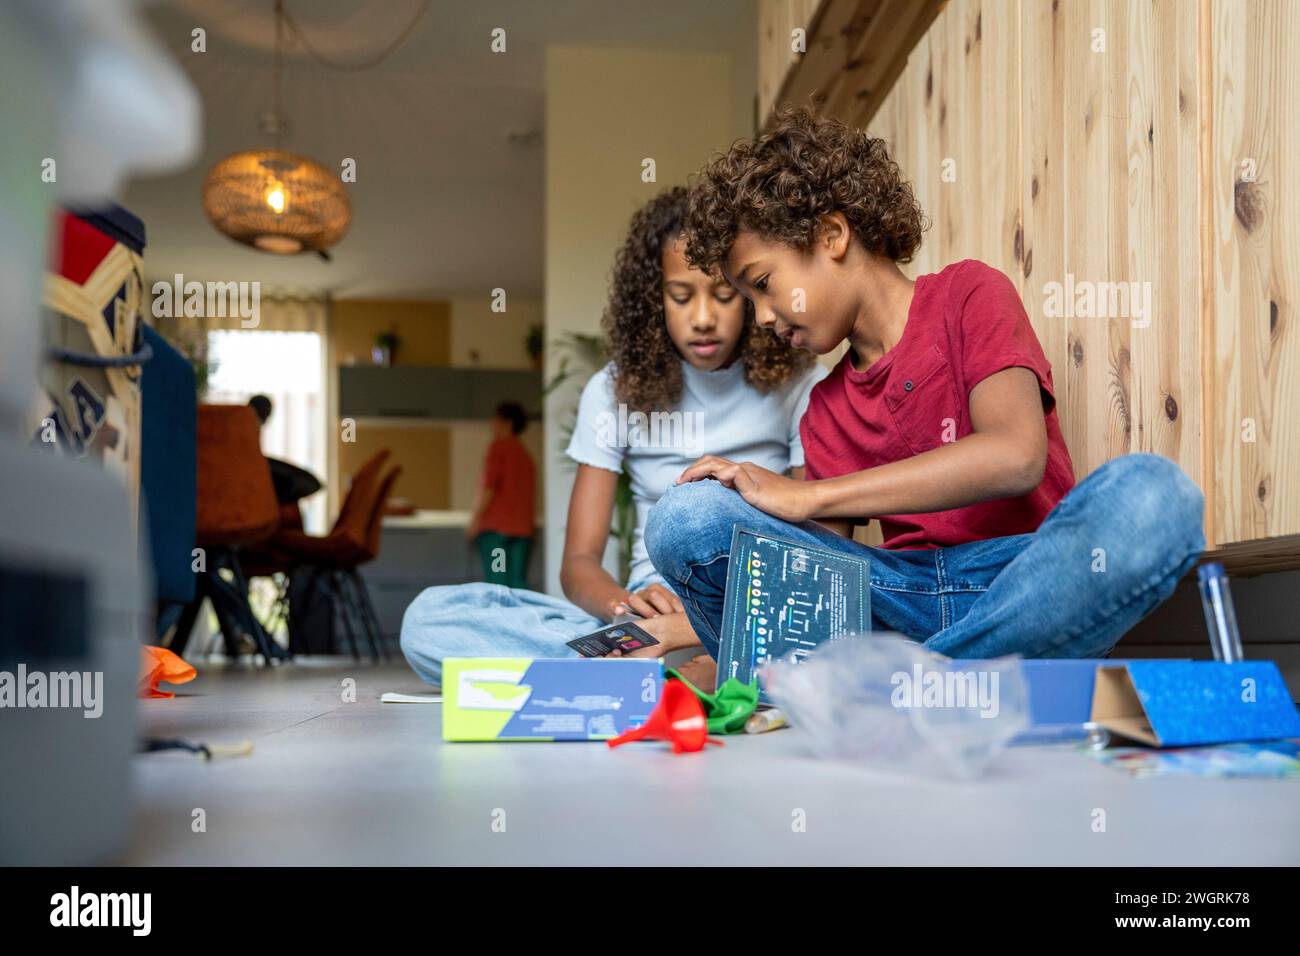 Fratello e sorella di razza mista che giocano contenti insieme felici sul pavimento con i giochi Foto Stock